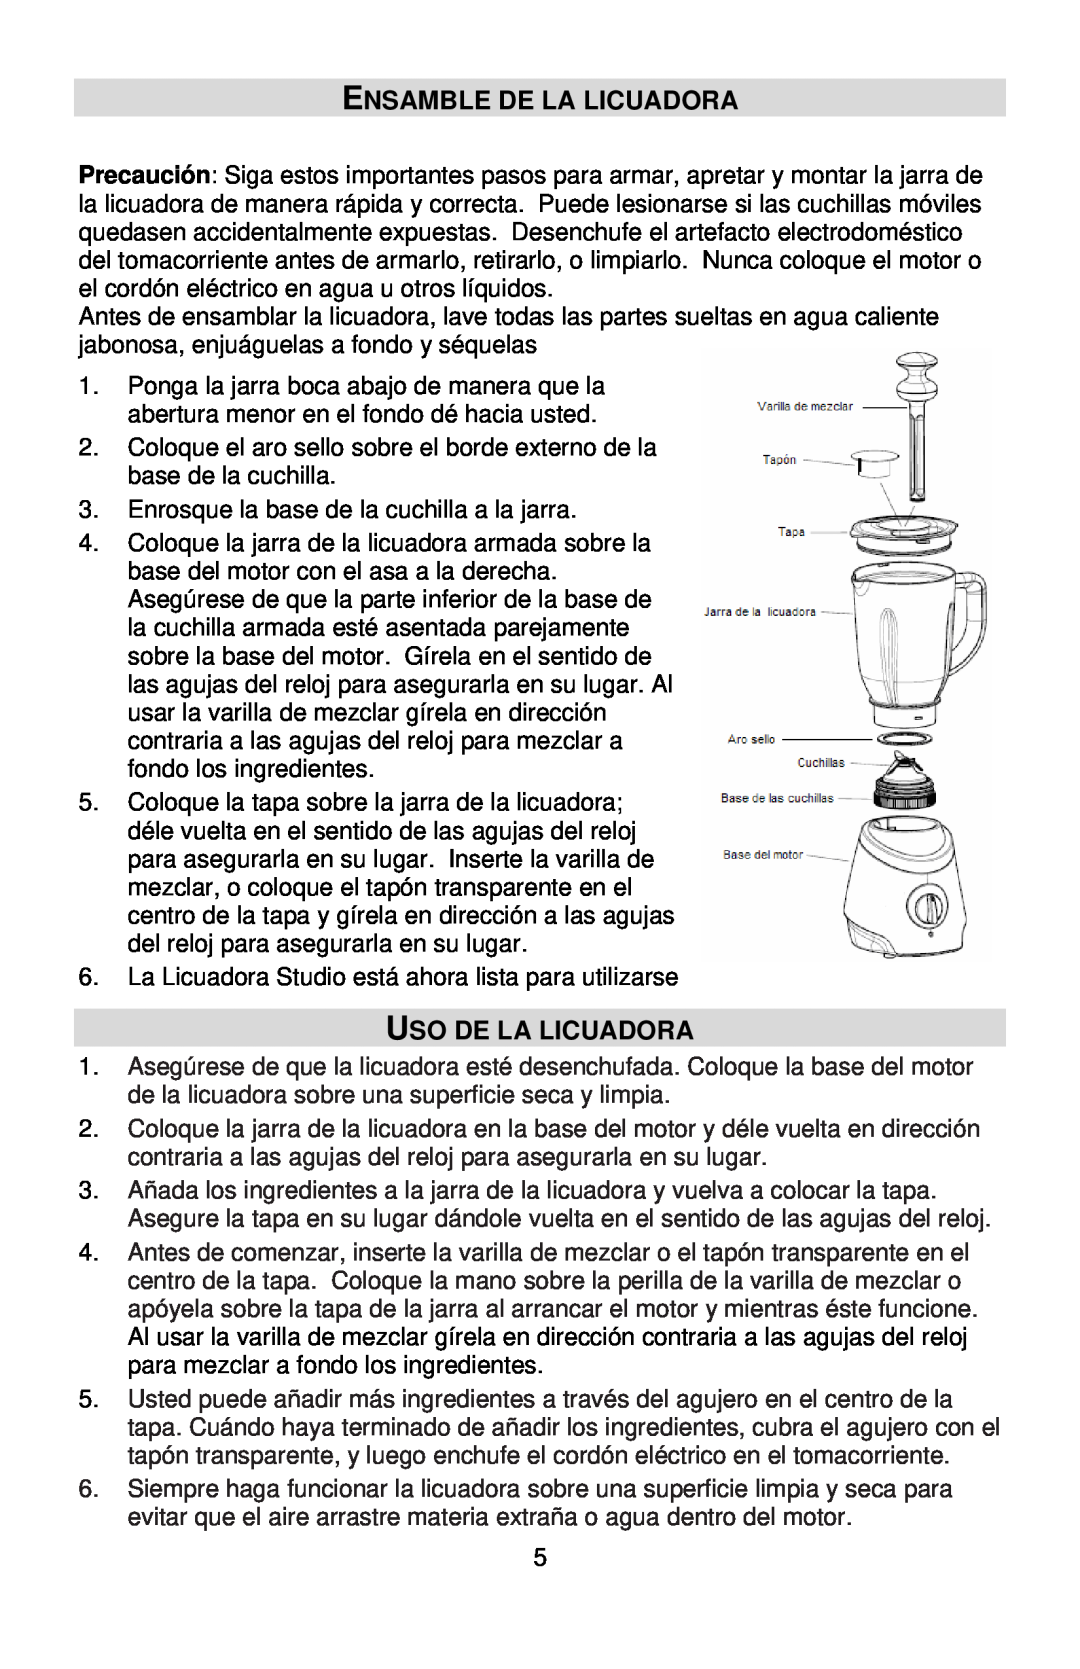 West Bend L5700 instruction manual Ensamble De La Licuadora, Uso De La Licuadora 